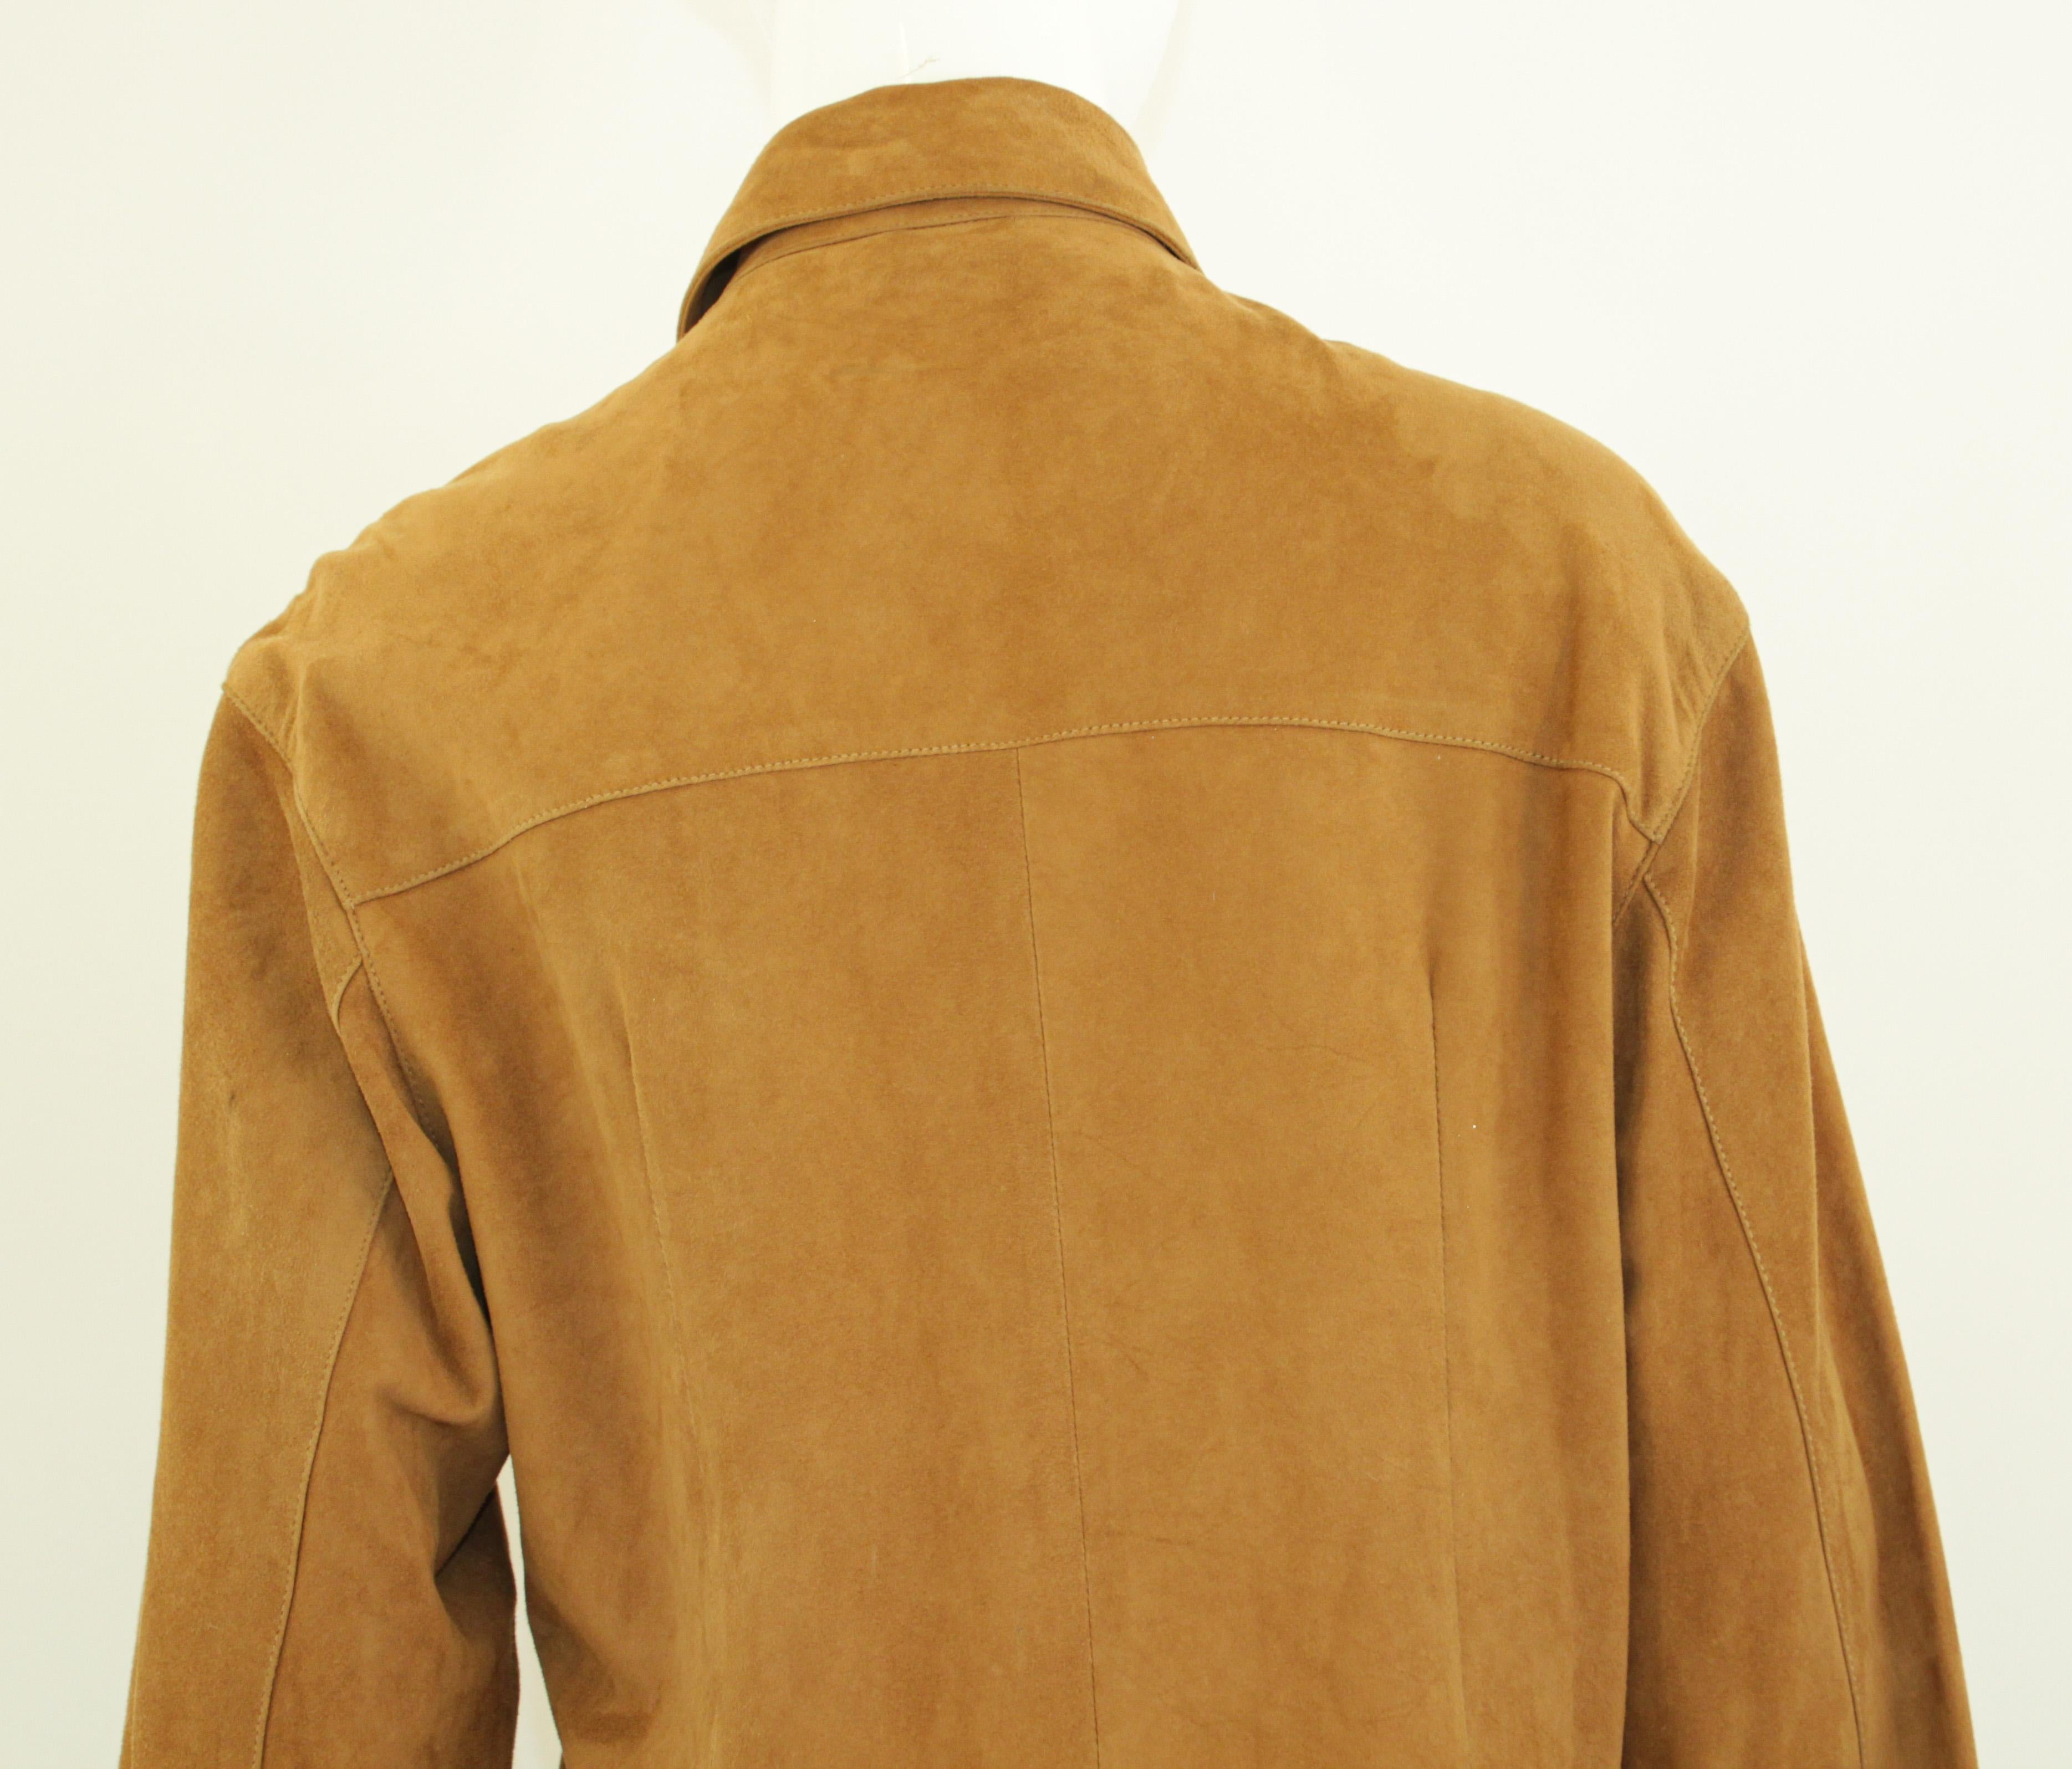 Vintage Suede Shirt Jacket Light Brown For Sale 6